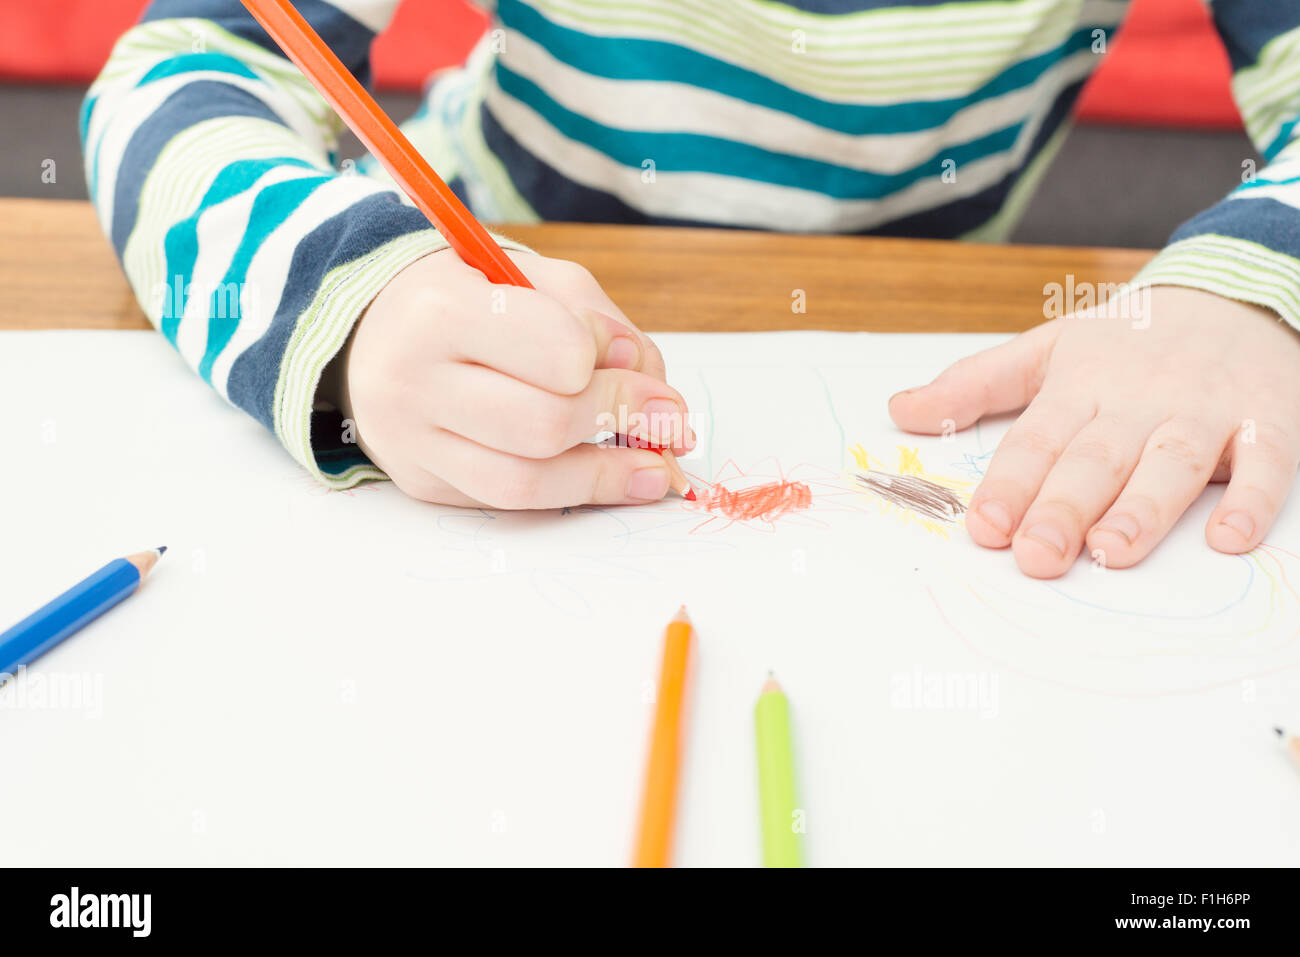 Kleines Mädchen zeichnen mit Farbstiften auf weißem Papier. Konzeptbild von Kindheit Phantasie, Kreativität und Phantasie. Stockfoto